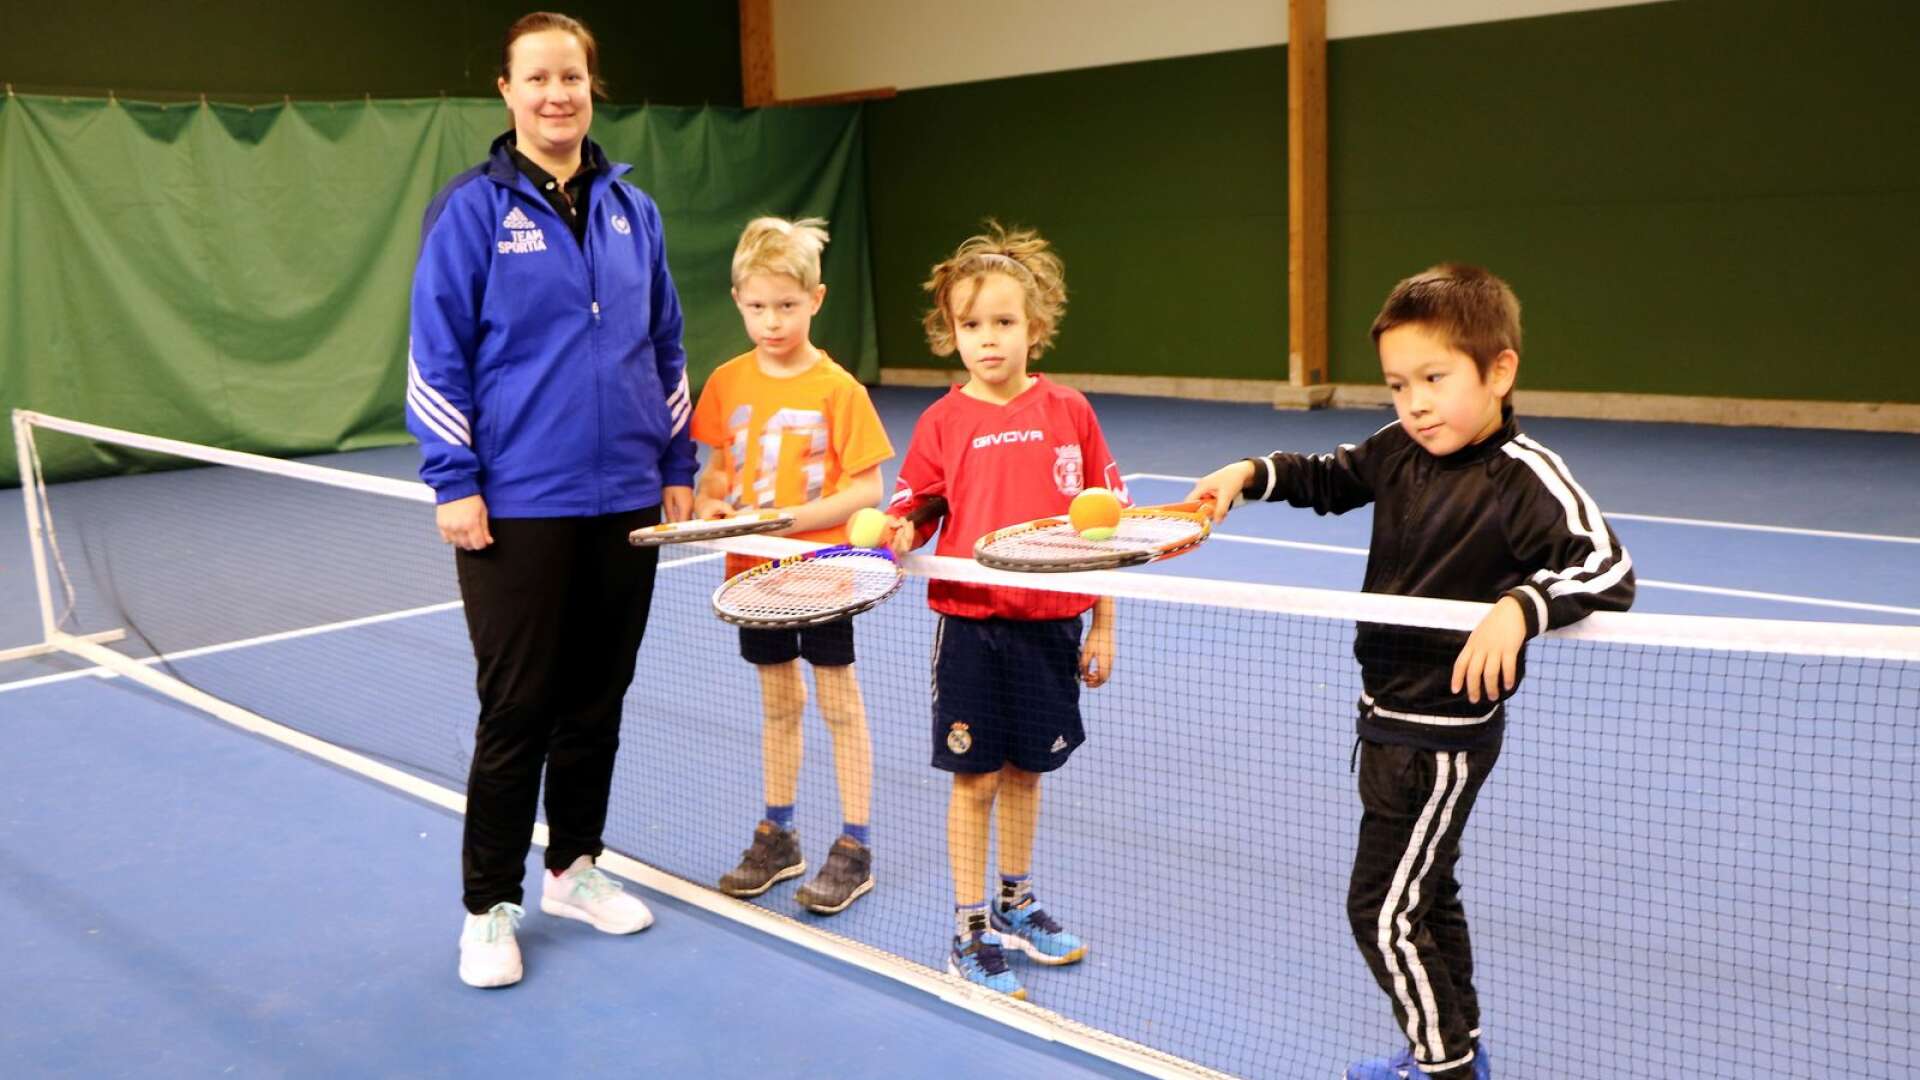 Björn Eriksson, Aitor Alvarez Santana och Alexander Stensson spelade tennis på sportlovet under ledning av Hjo Tennisklubbs tränare Martina Susi. 